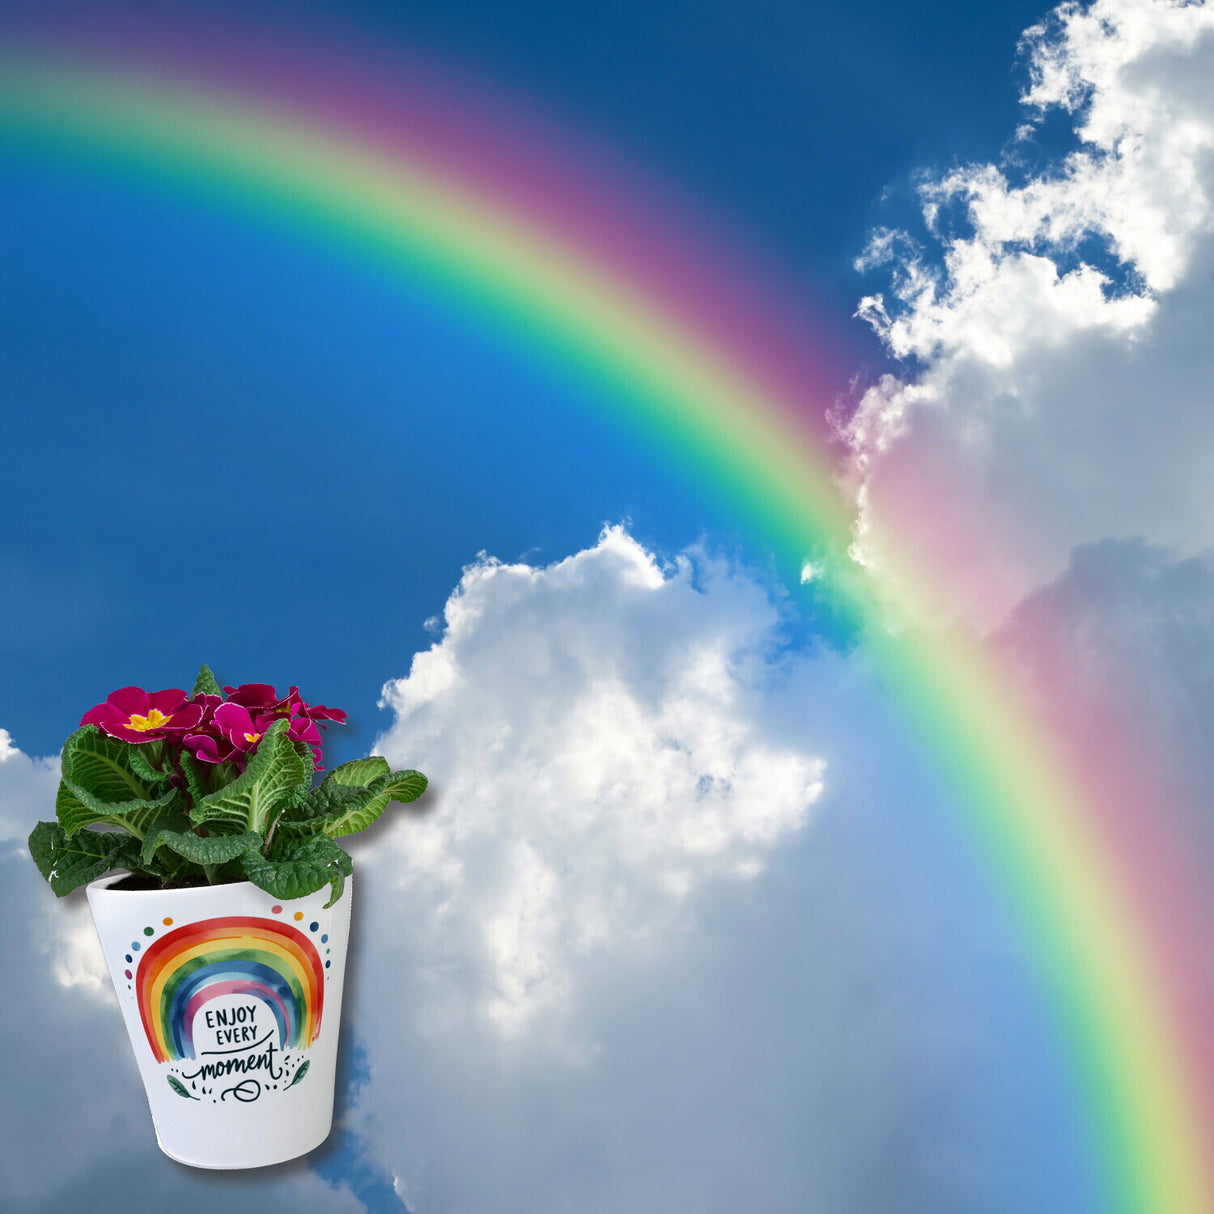 Regenbogen Blumentopf mit Spruch Enjoy every moment